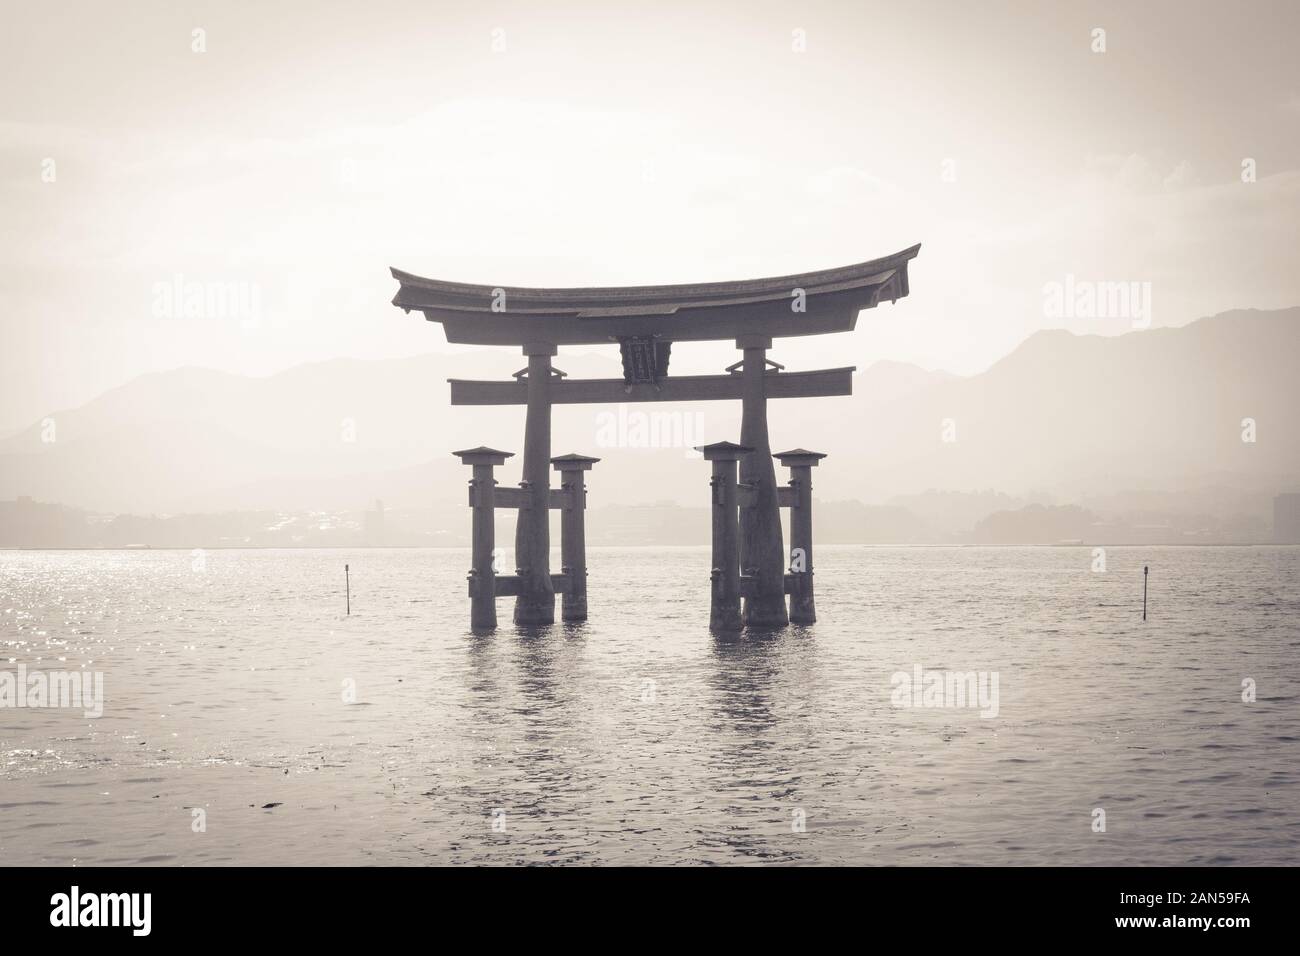 Porte torii flottante noire et blanche du sanctuaire d'Itsukushima (Itsukushima-jinja) sur l'île de Miyajima (Itsukushima) dans la préfecture d'Hiroshima, au Japon. Banque D'Images